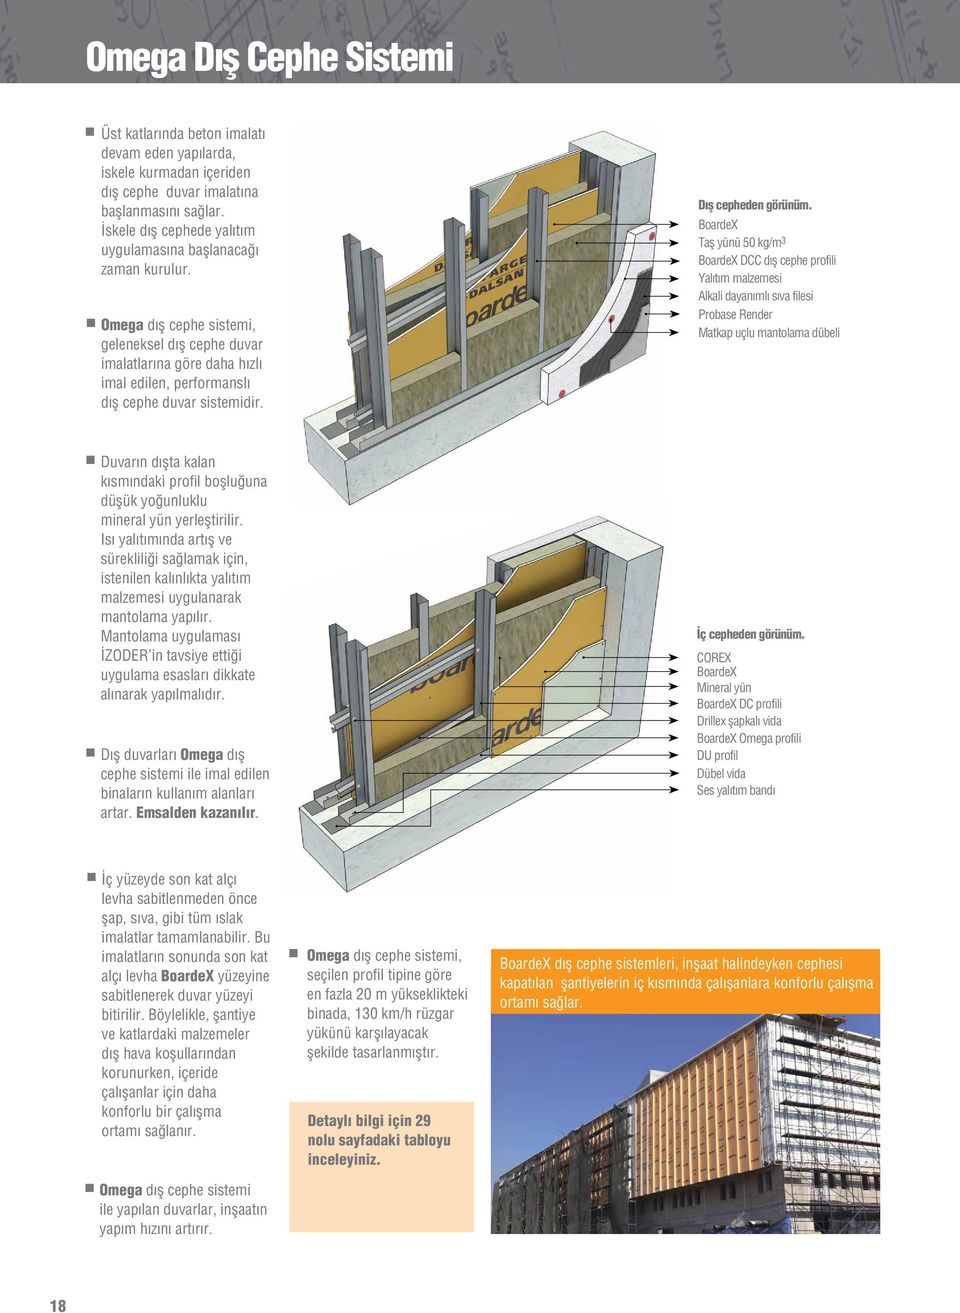 Omega dış cephe sistemi, geleneksel dış cephe duvar imalatlarına göre daha hızlı imal edilen, performanslı dış cephe duvar sistemidir. Dış cepheden görünüm.